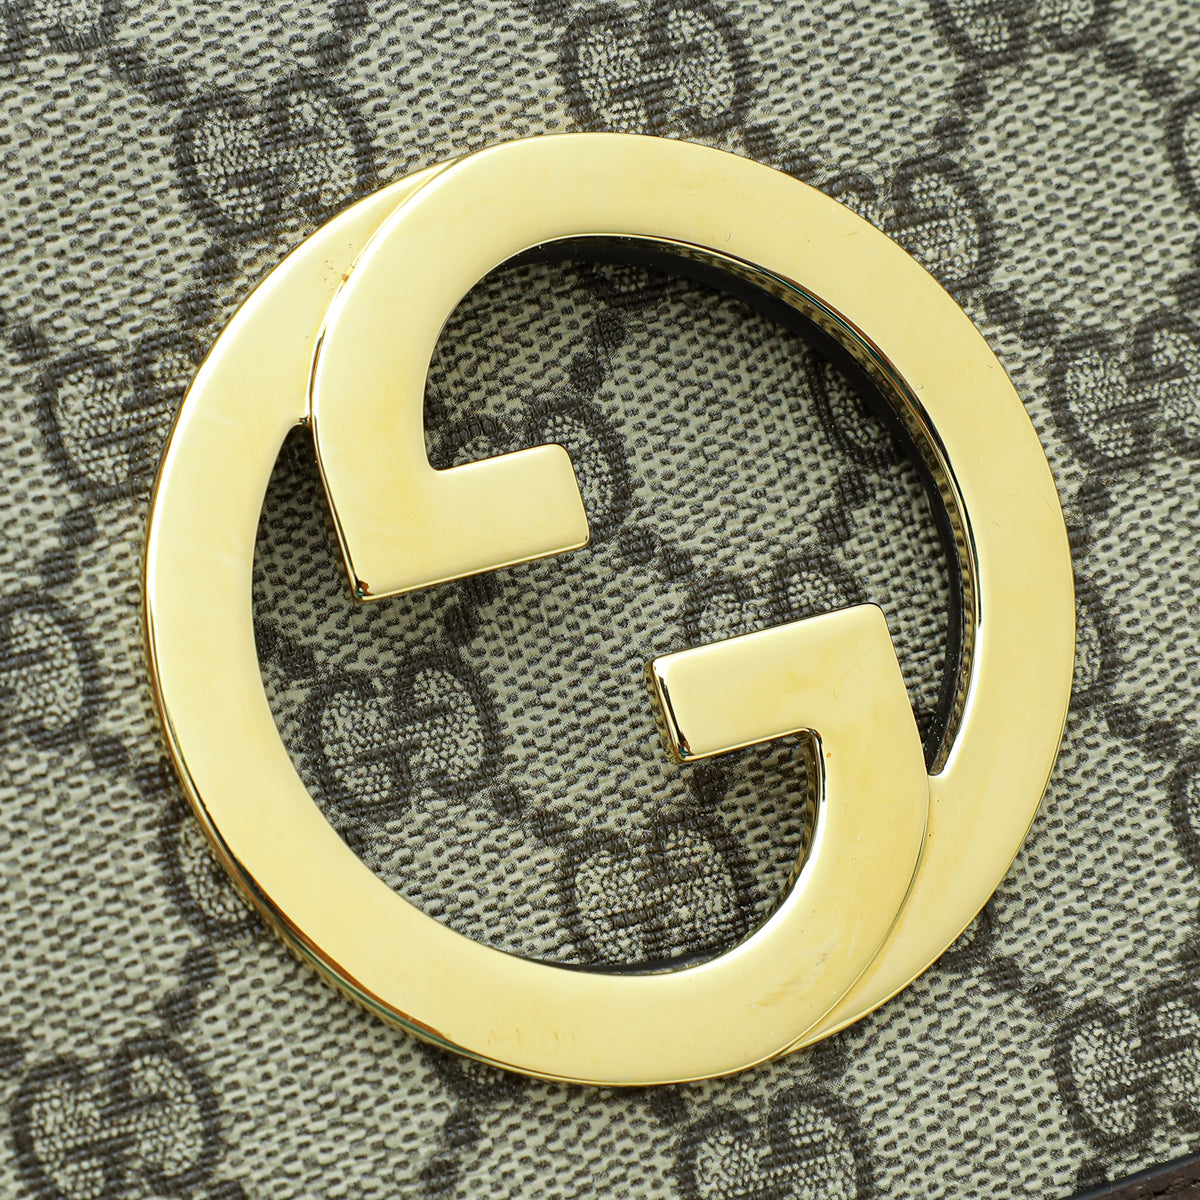 Gucci Bicolor GG Supreme Blondie Belt Bag